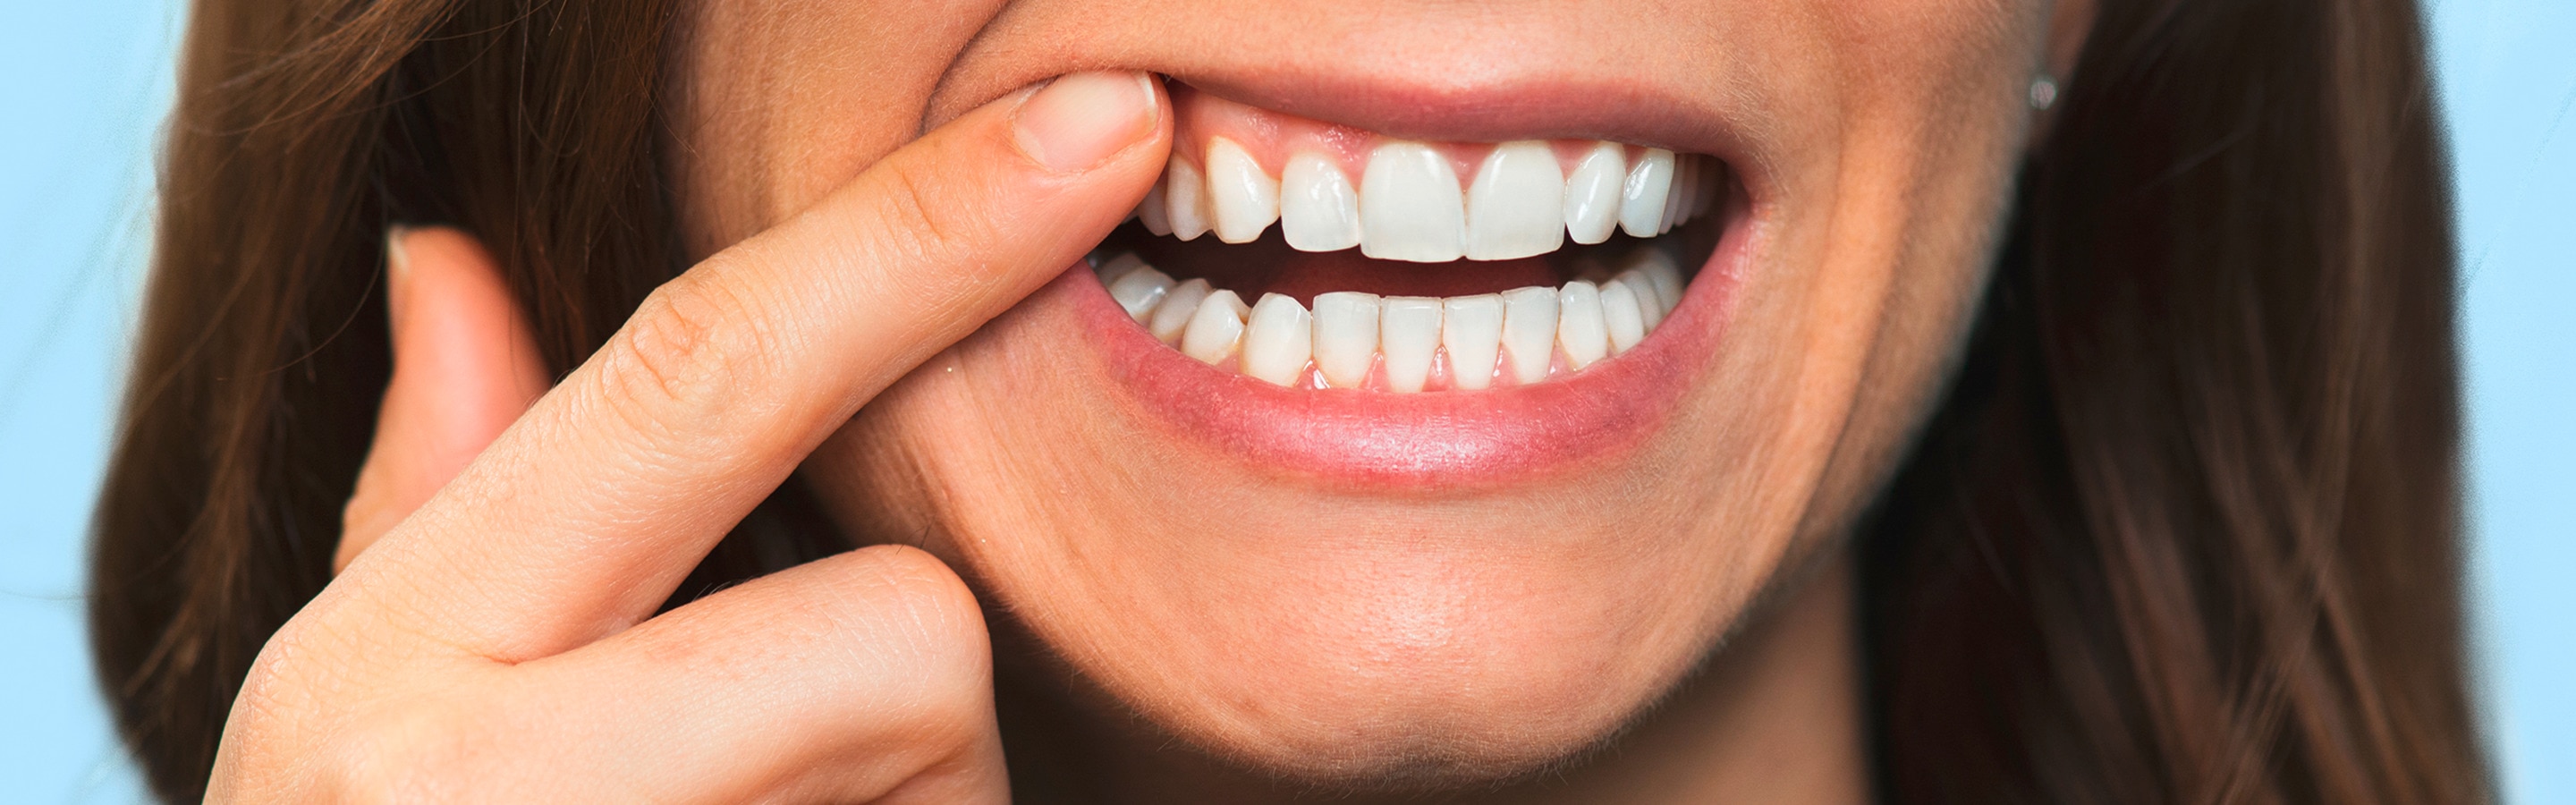 Wie behandelt man Zahnfleischbluten?